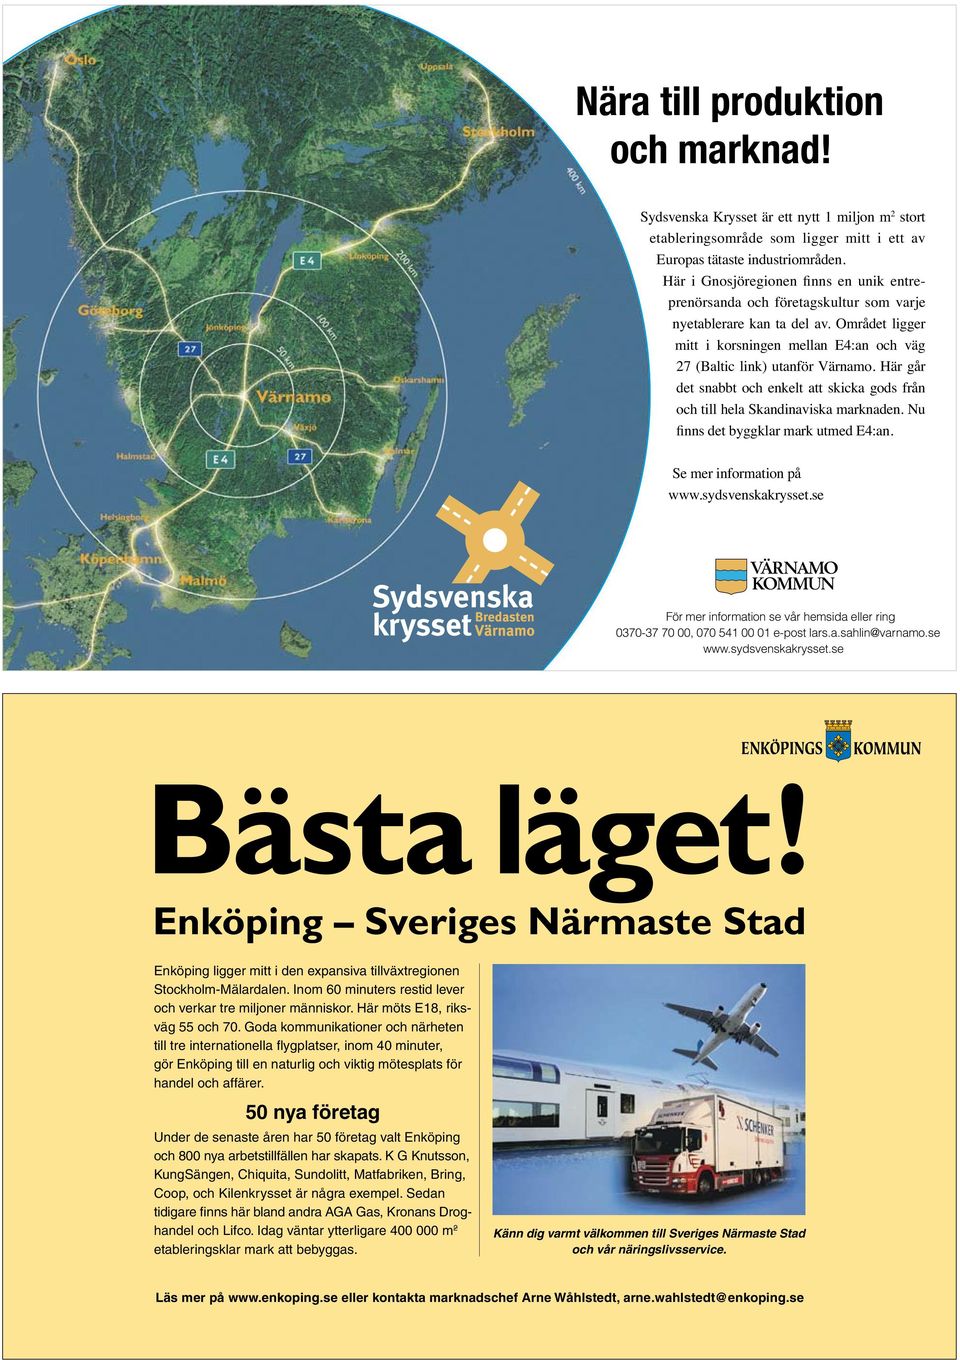 Här möts E18, riksväg 55 och 70. Goda kommunikationer och närheten till tre internationella flygplatser, inom 40 minuter, gör Enköping till en naturlig och viktig mötesplats för handel och affärer.